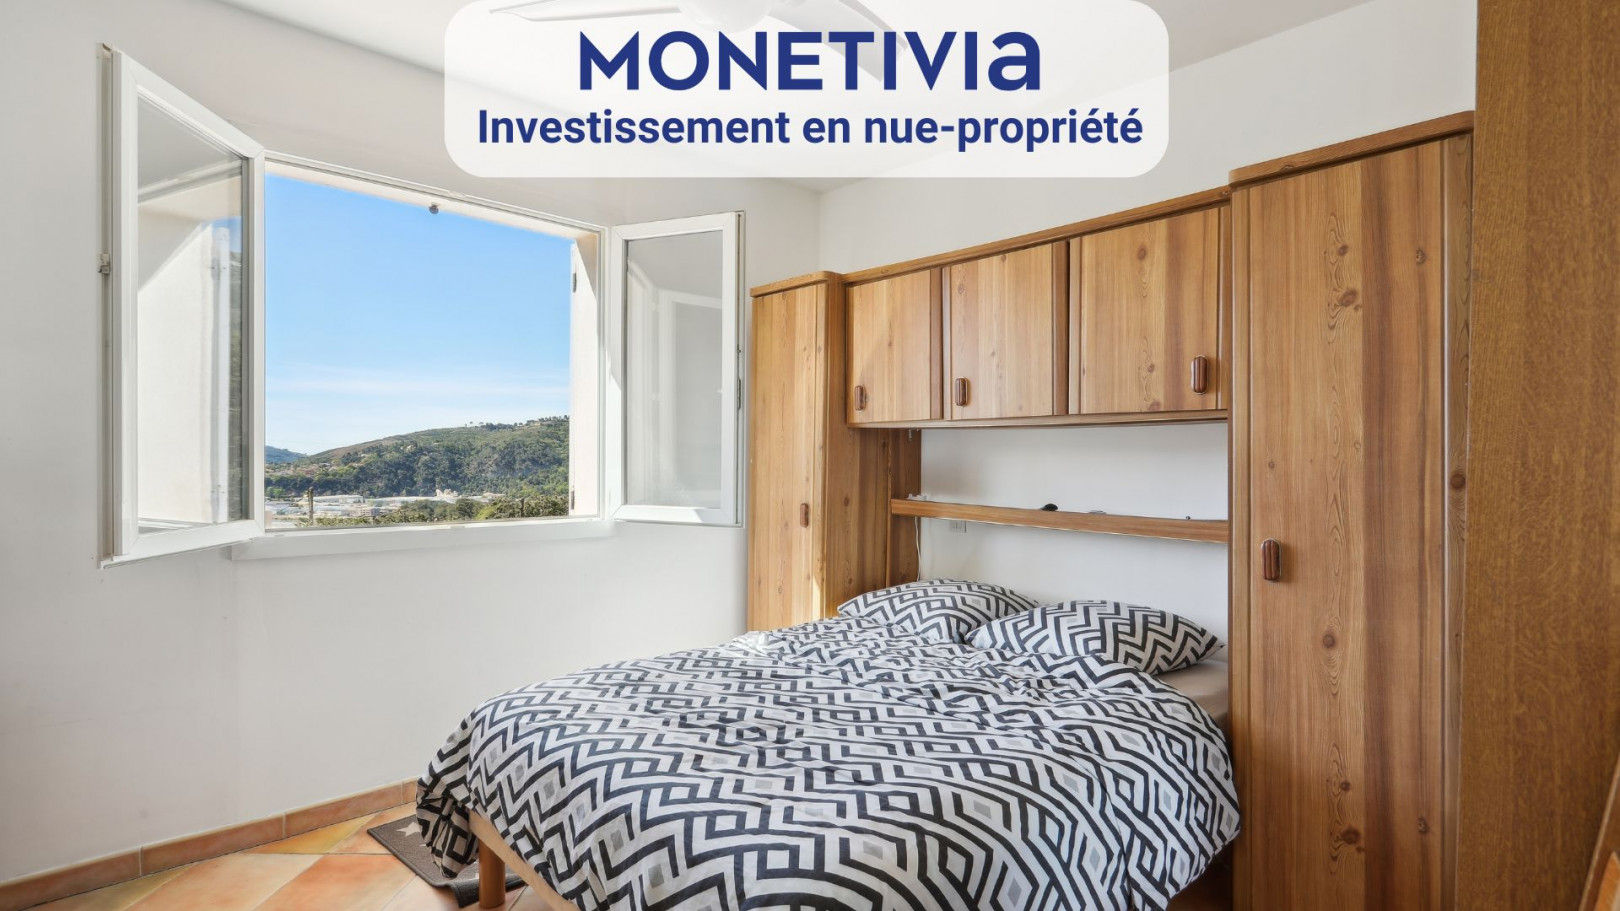 
                                                Vente
                                                 Opportunité d'investissement en nue-propriété - Villa Proche Nice .Spécial Investisseur décote immédiate de 200 000 €